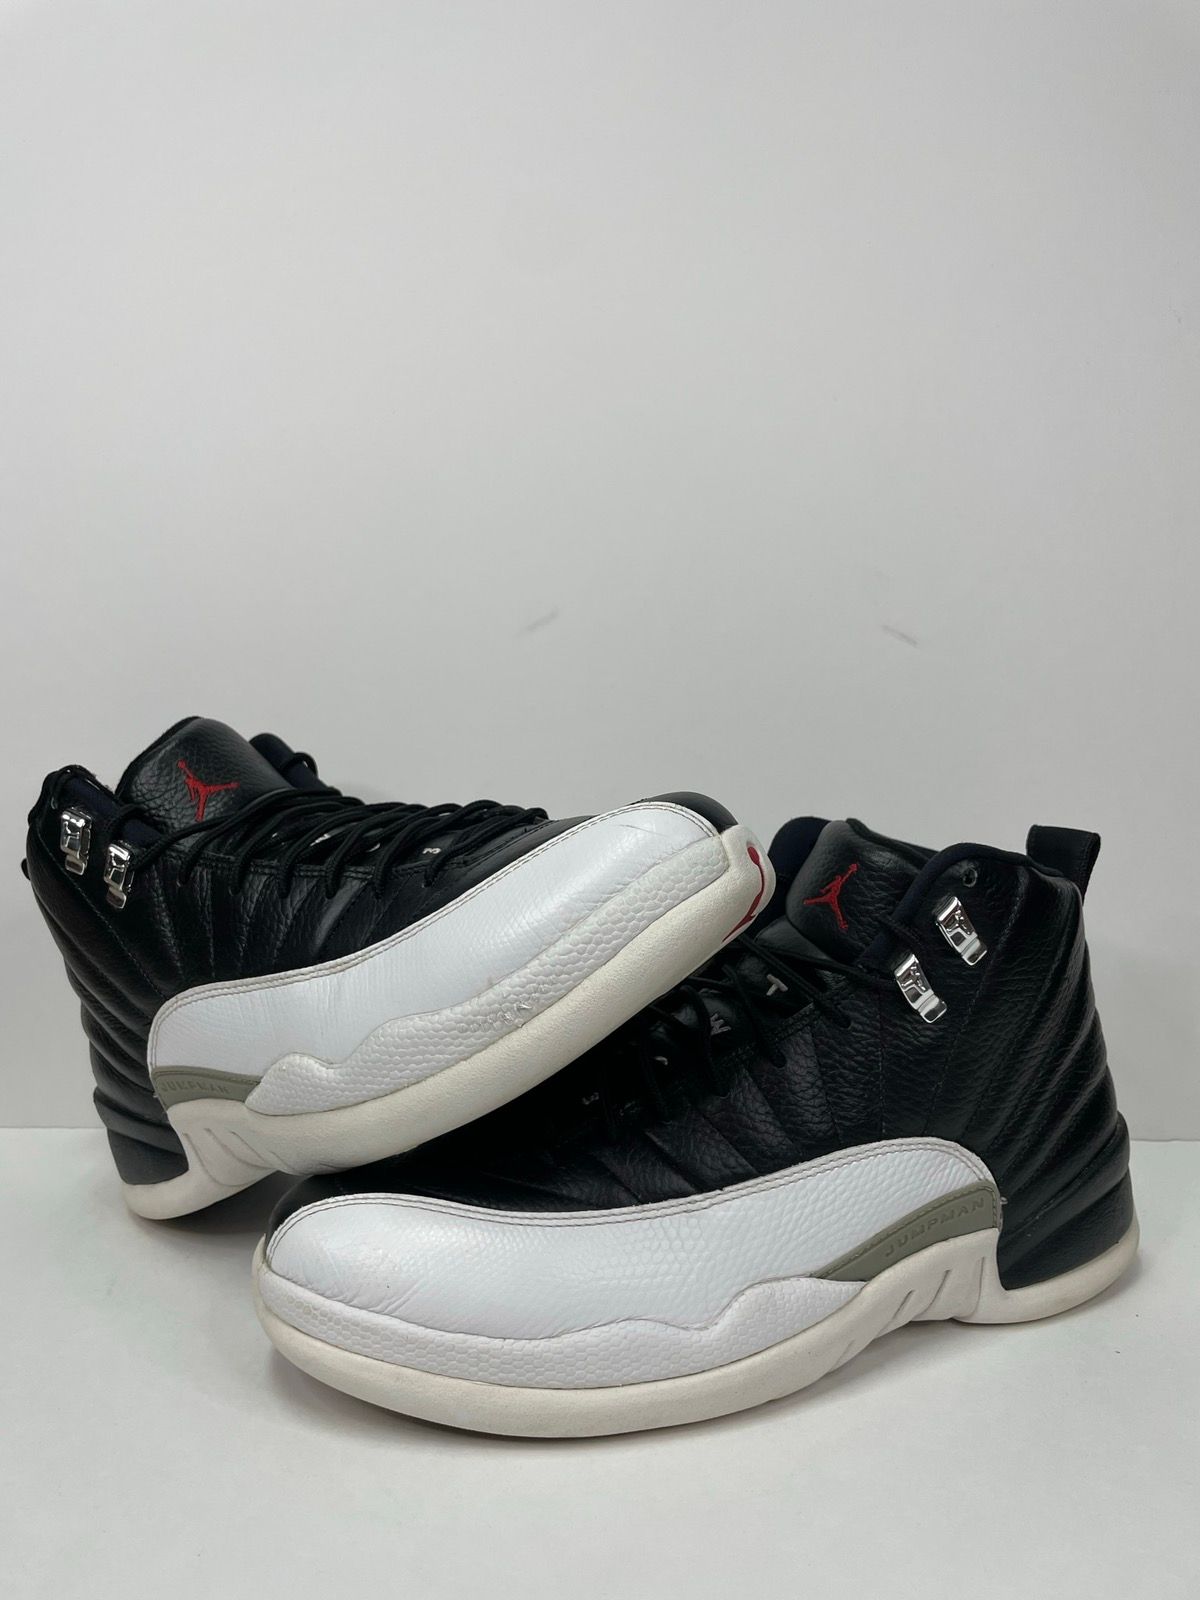 Pre-owned Jordan Brand Air Jordan 12 Retro Playoff 2012 Shoes In Black